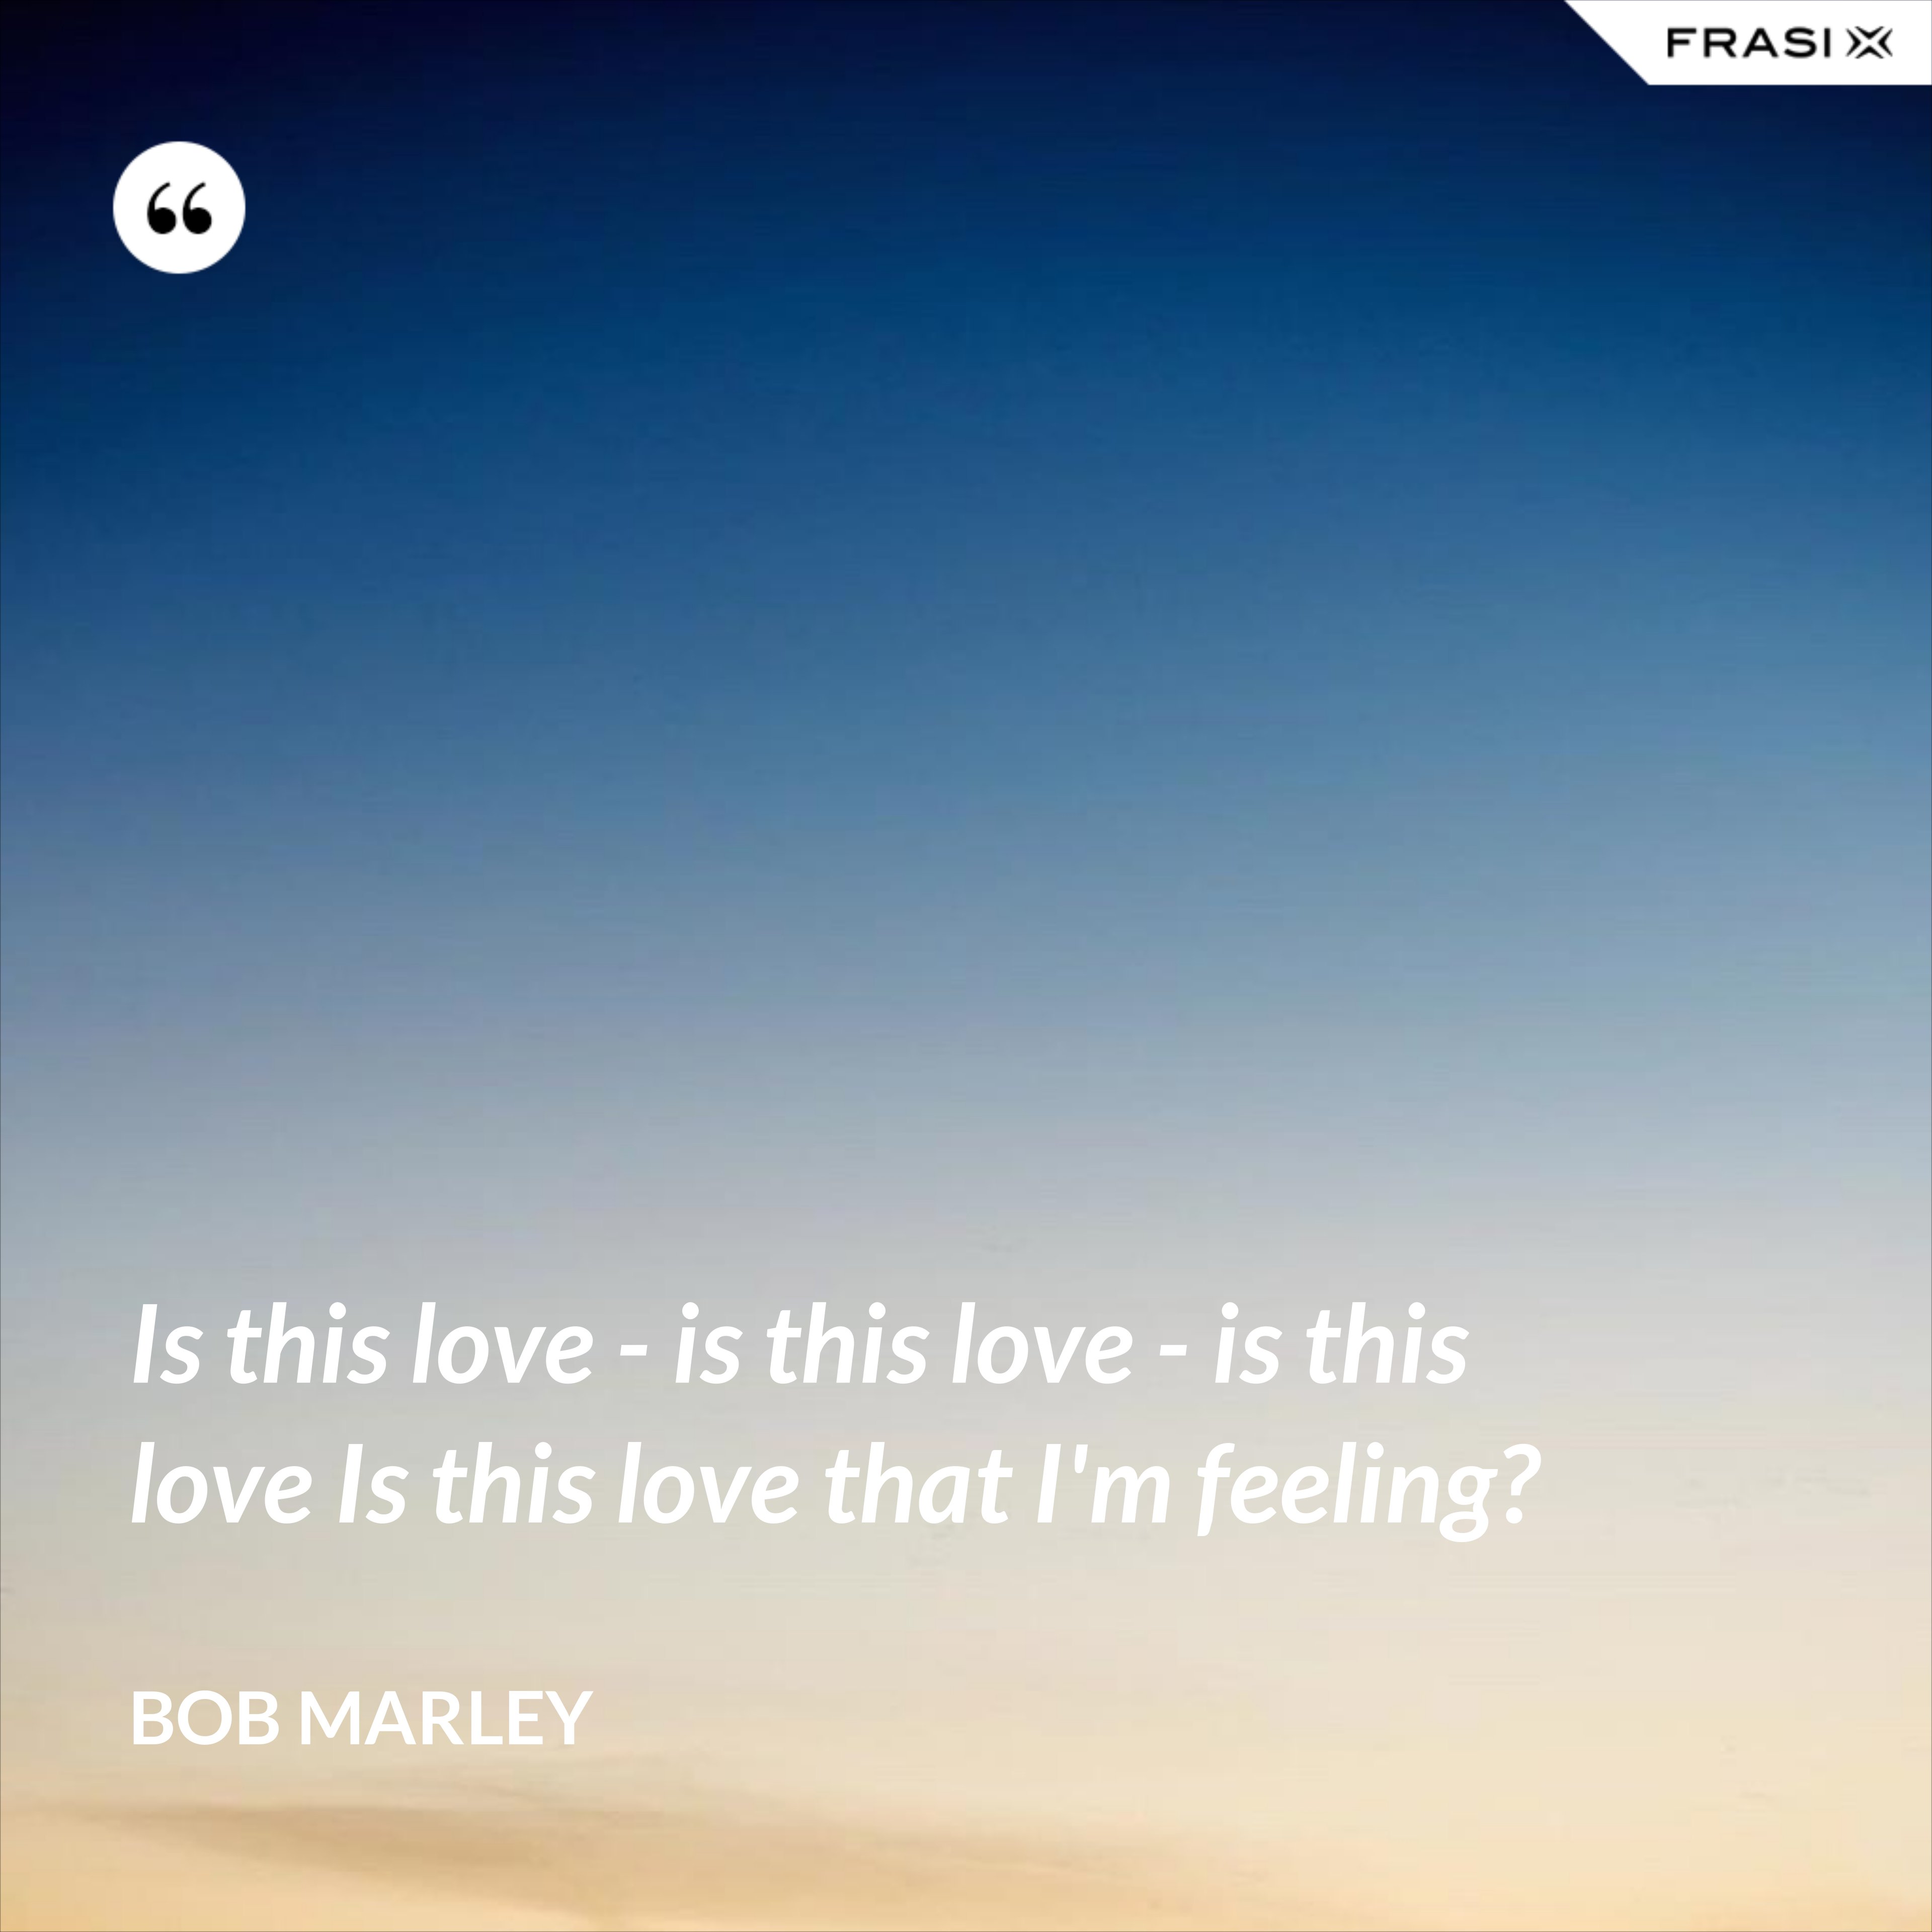 Is this love - is this love - is this love Is this love that I'm feeling? - Bob Marley